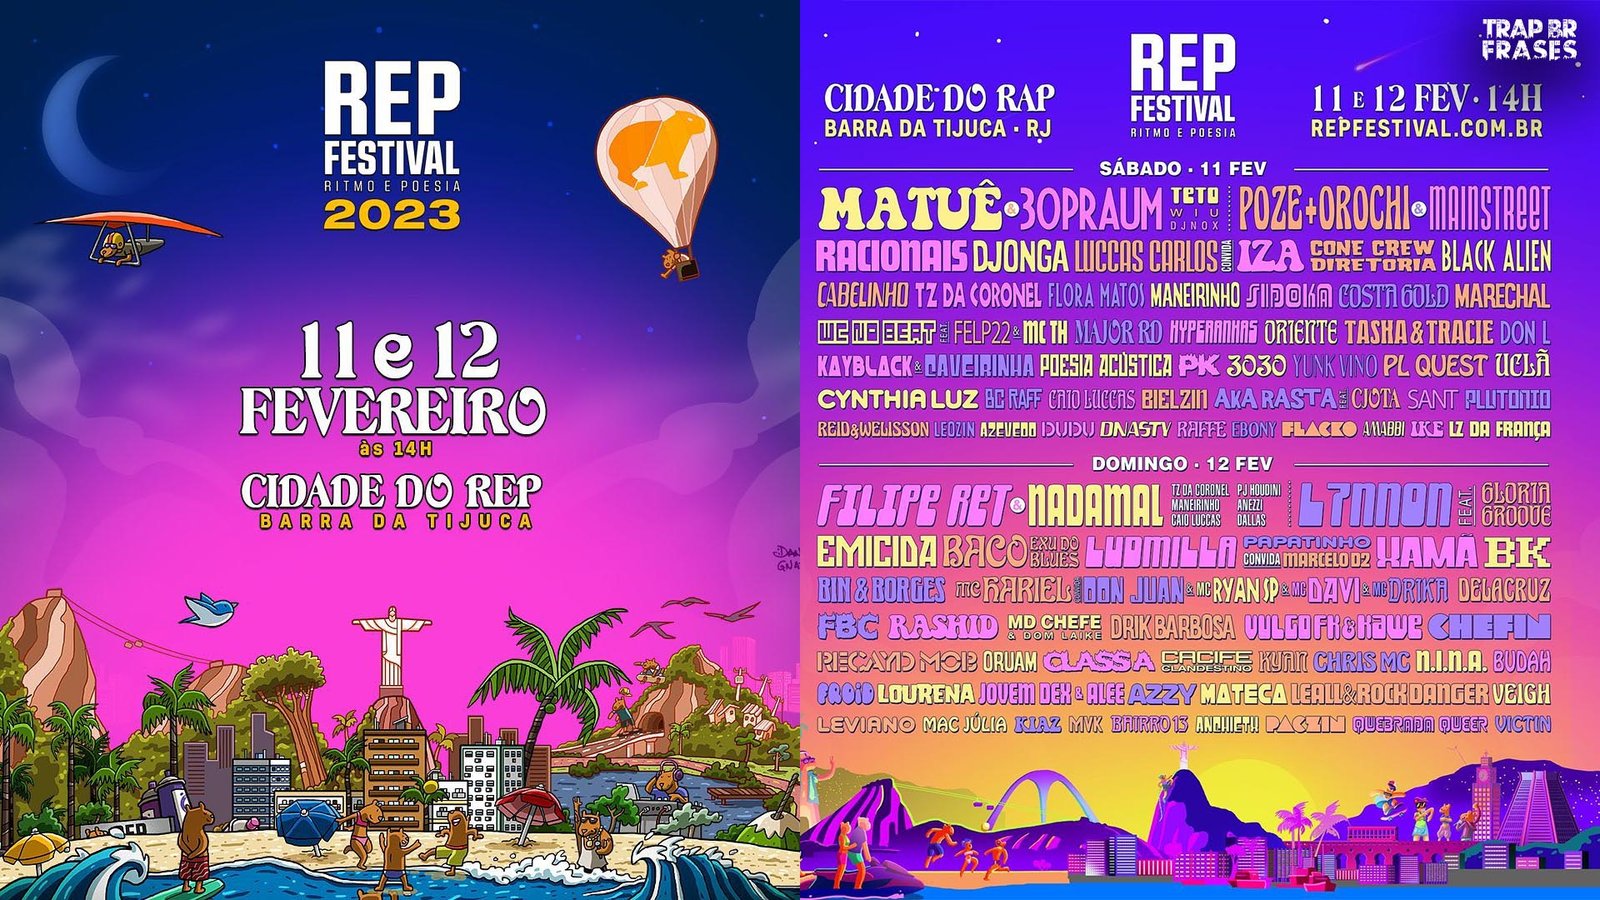 Após muitas críticas, Rep Festival faz mudanças em Line Up; evento